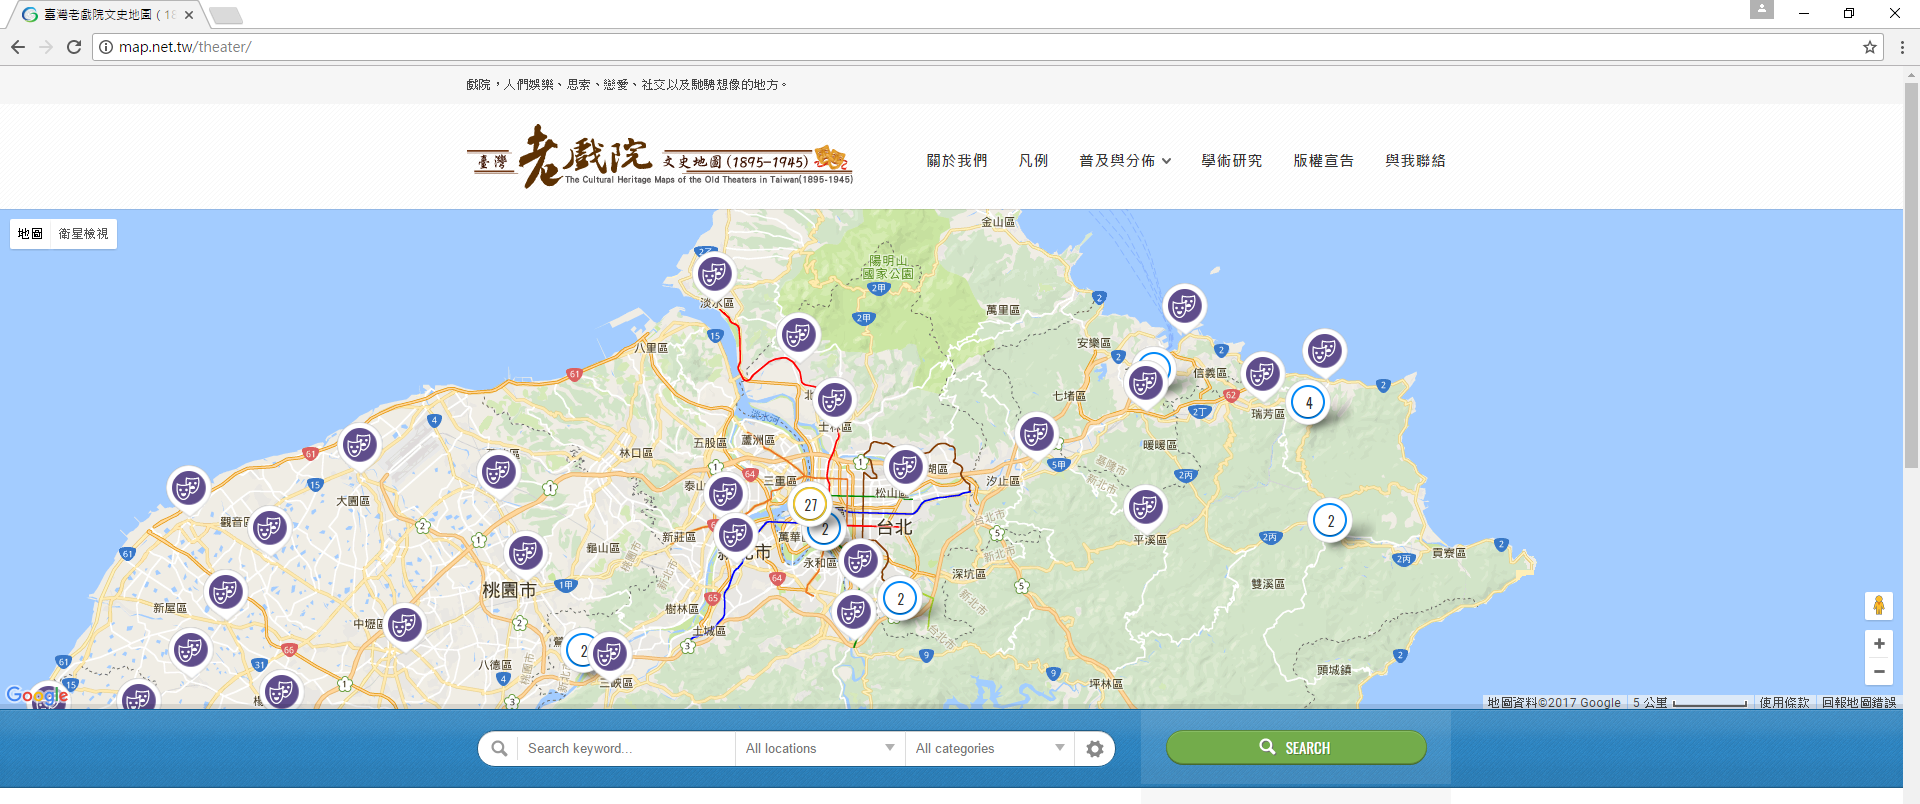 台灣老戲院網站地圖